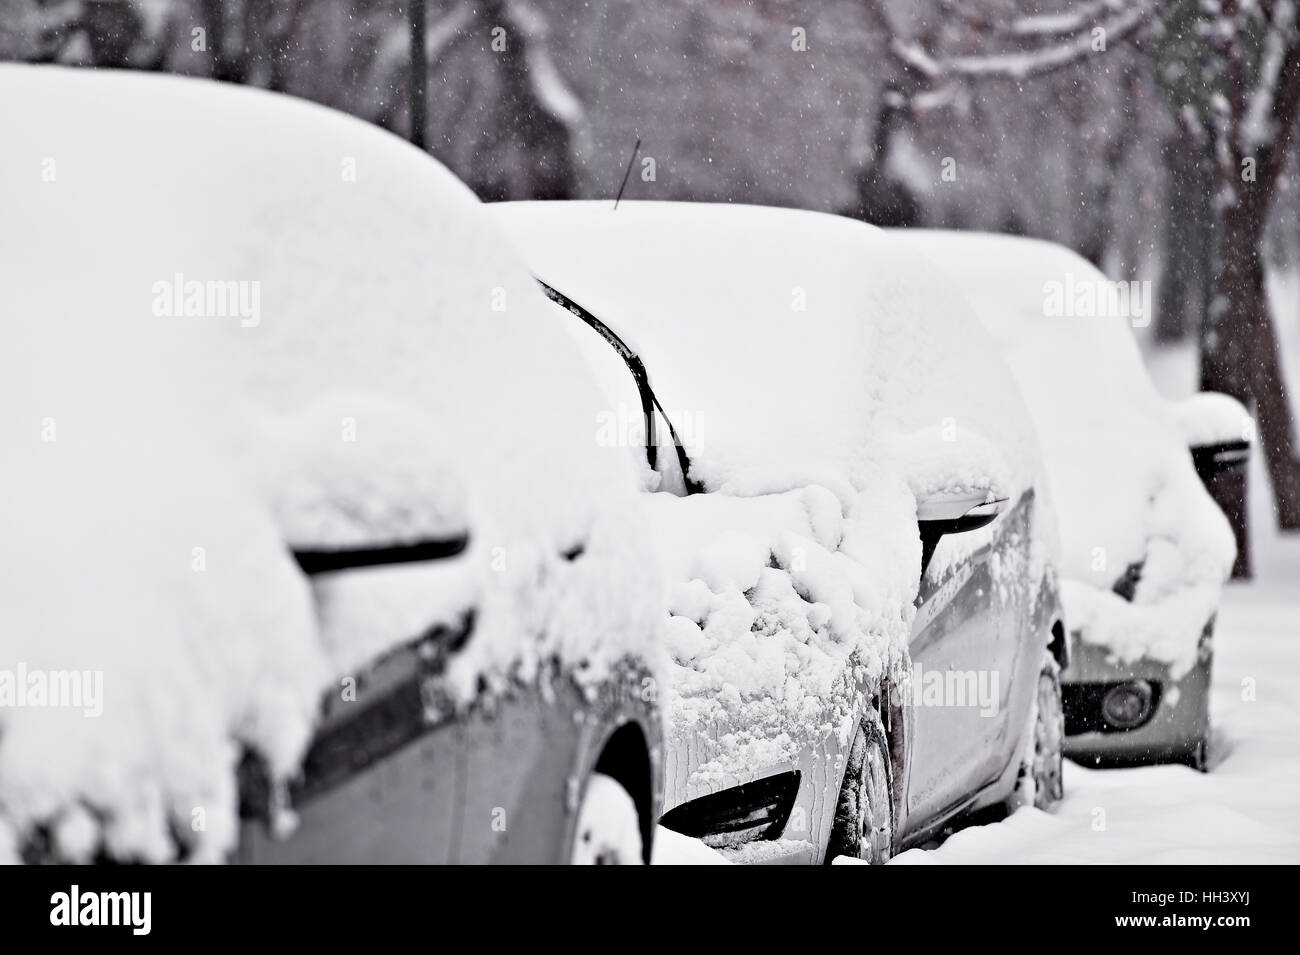 Scheibenwischer eines schneebedeckten Autos nach starkem Schneefall Stockfoto